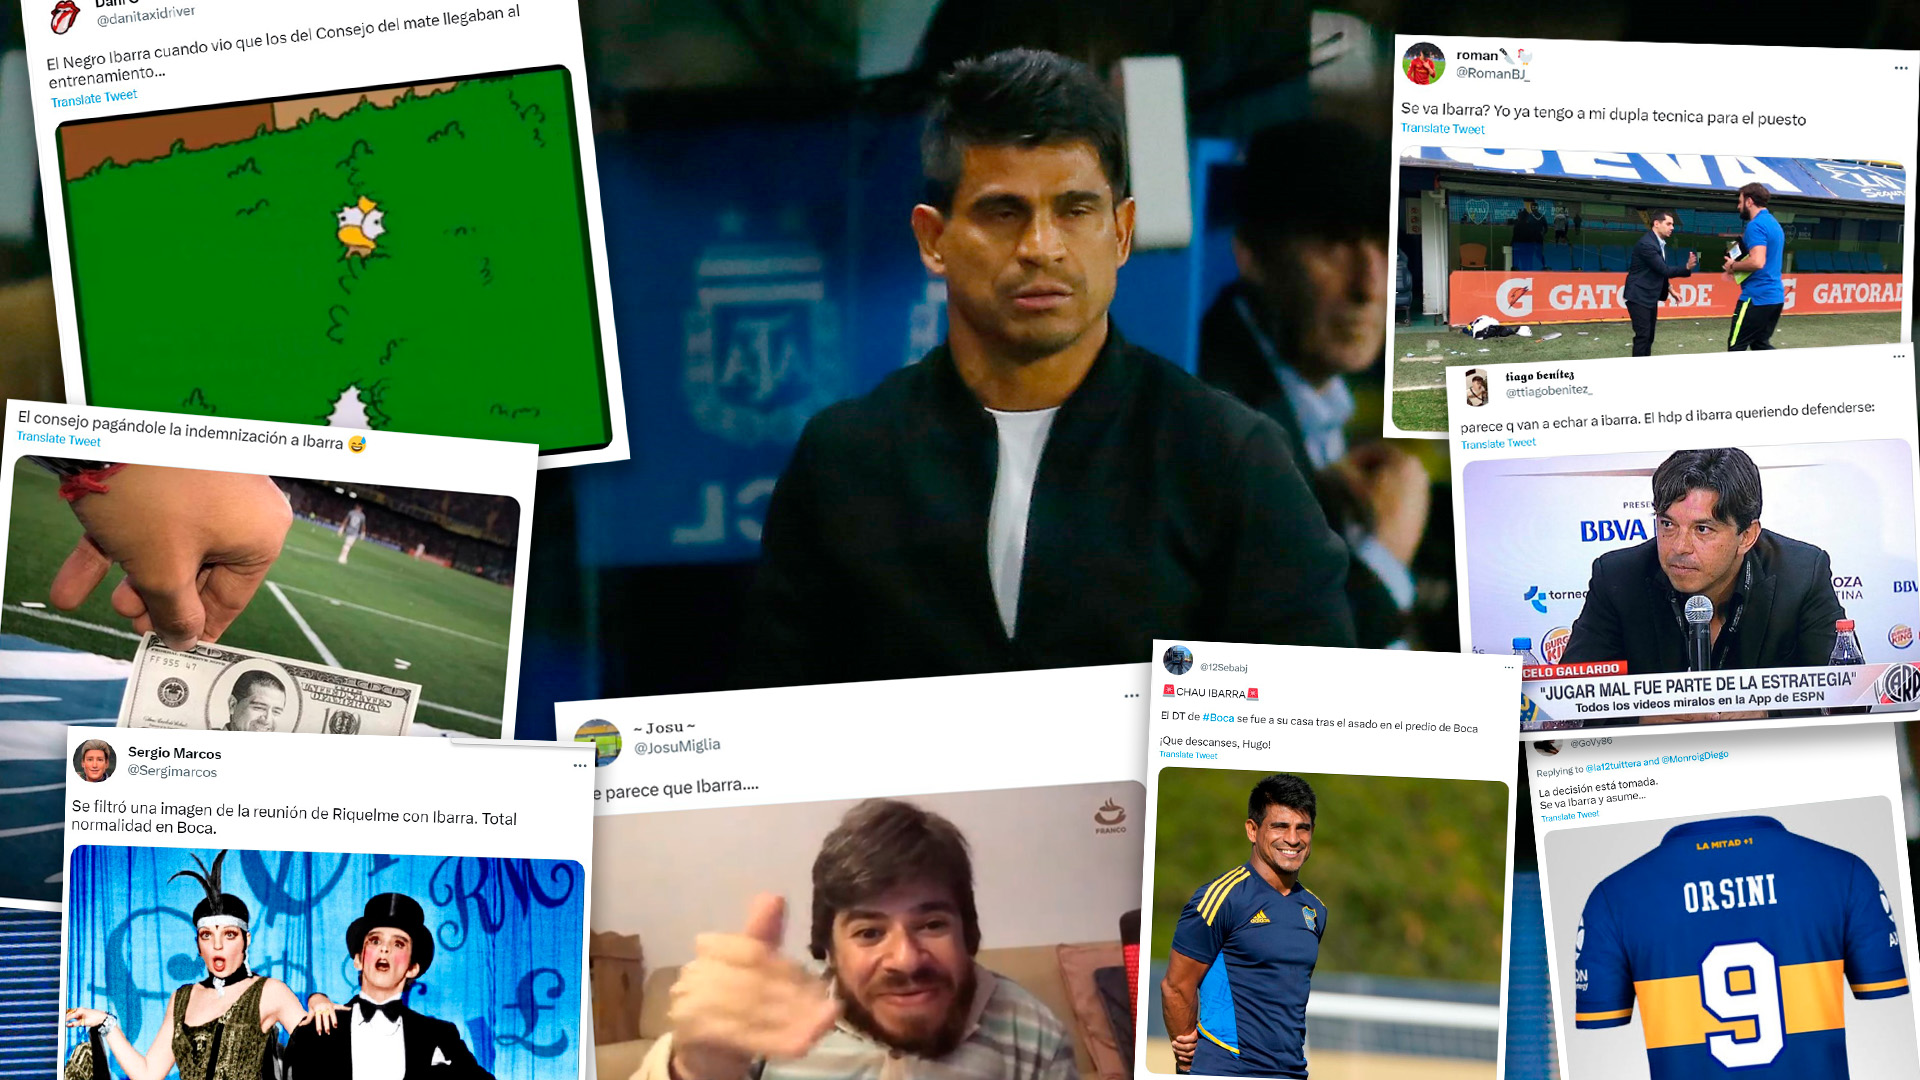 Boca Juniors despidió a Hugo Ibarra como entrenador y explotaron los memes: la reacción de los hinchas y los dardos al “Consejo del Mate”